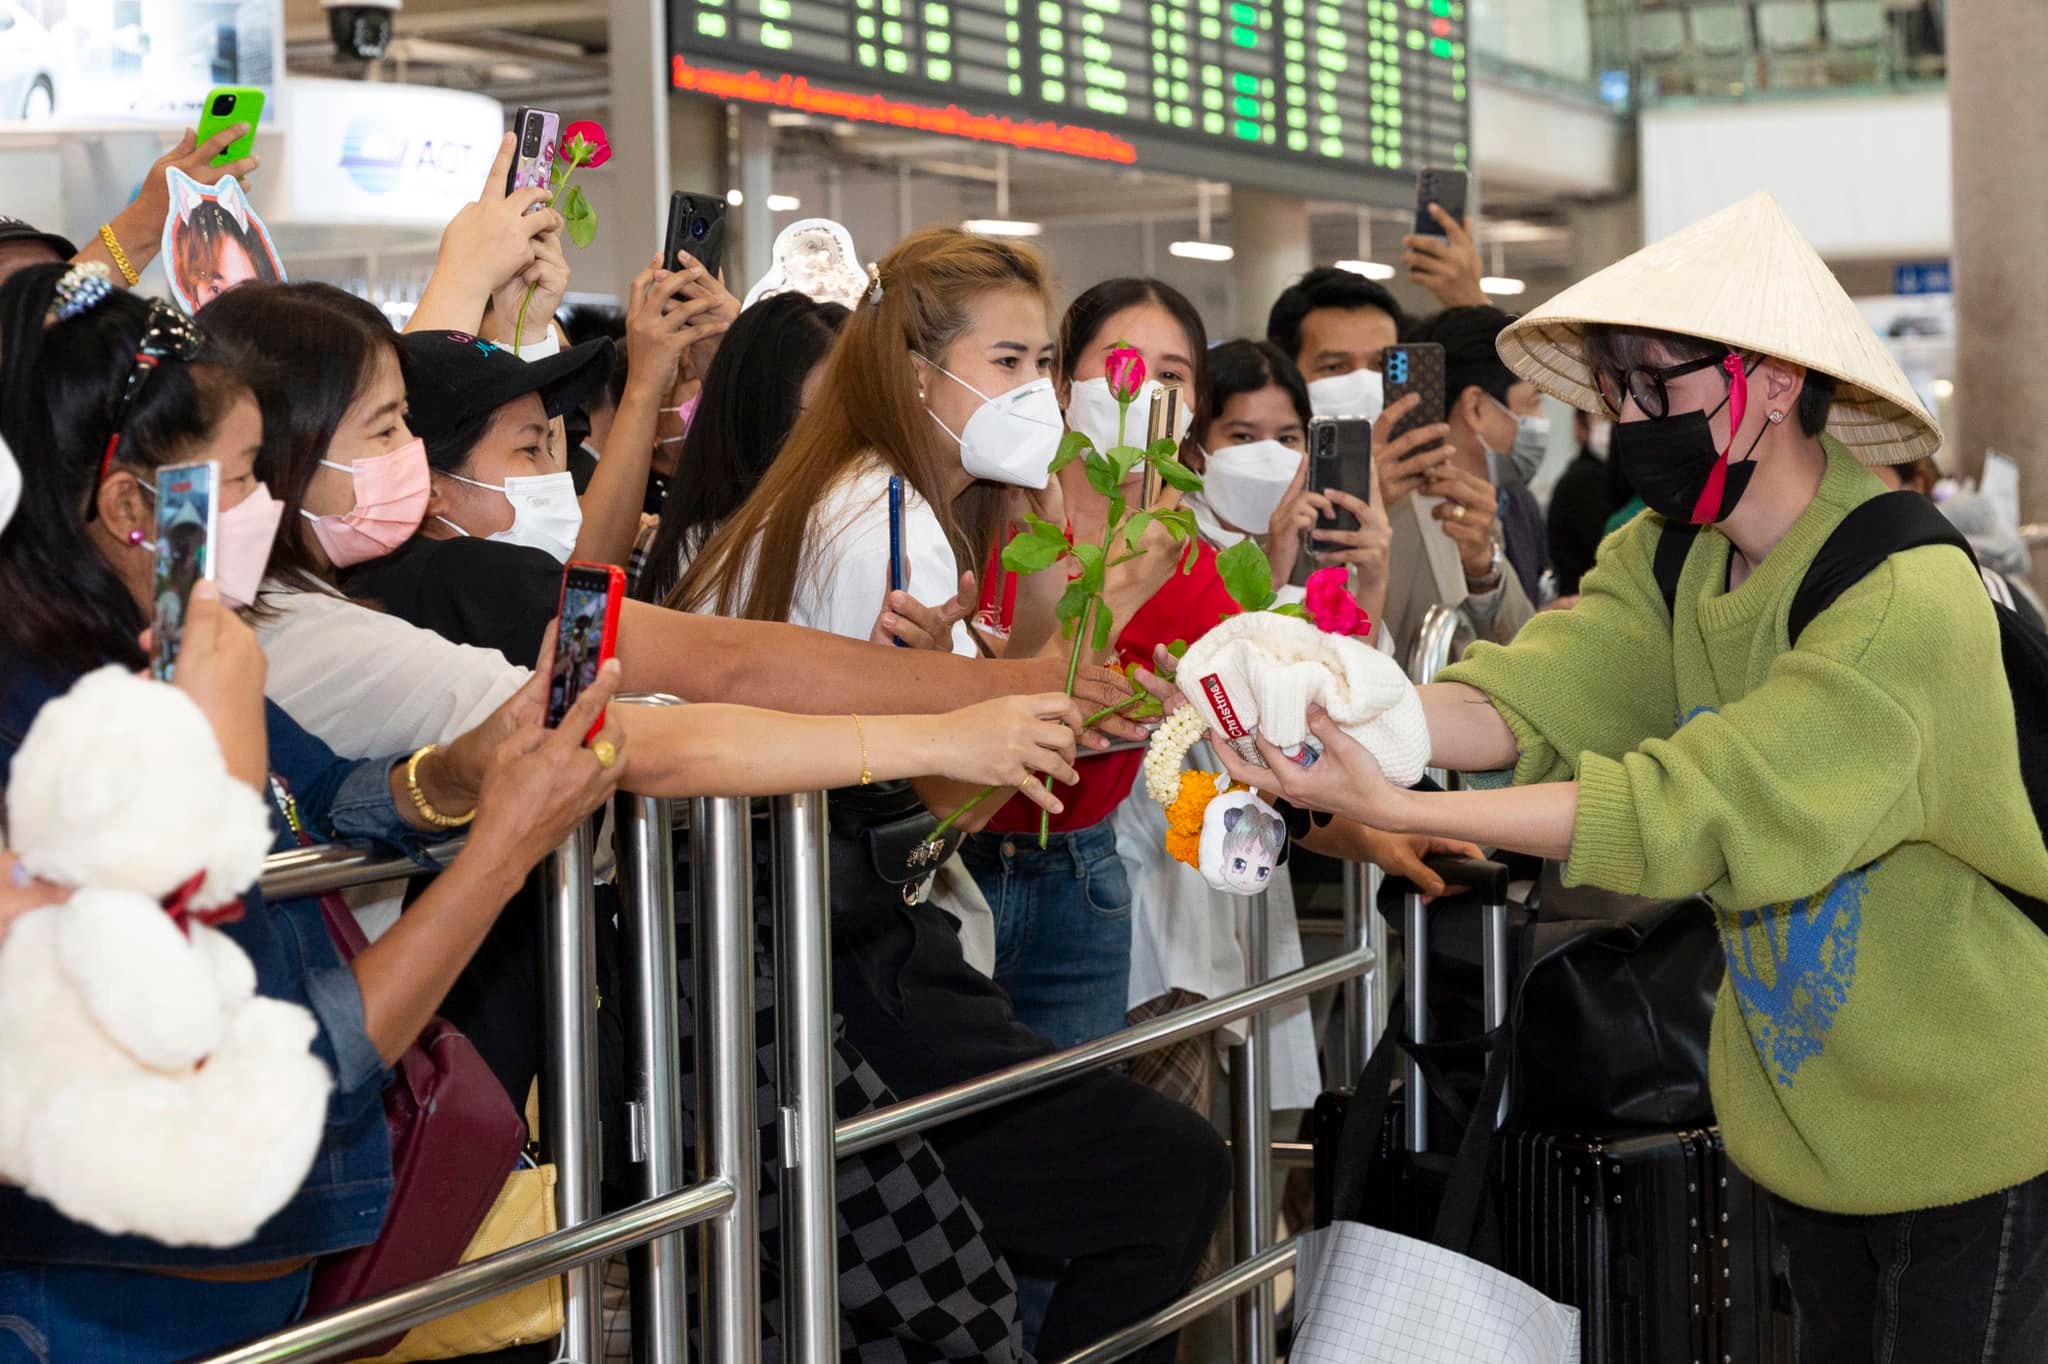 Quang Hùng MasterD được fan Thái chào đón nồng nhiệt khiến netizen Việt nở mũi tự hào